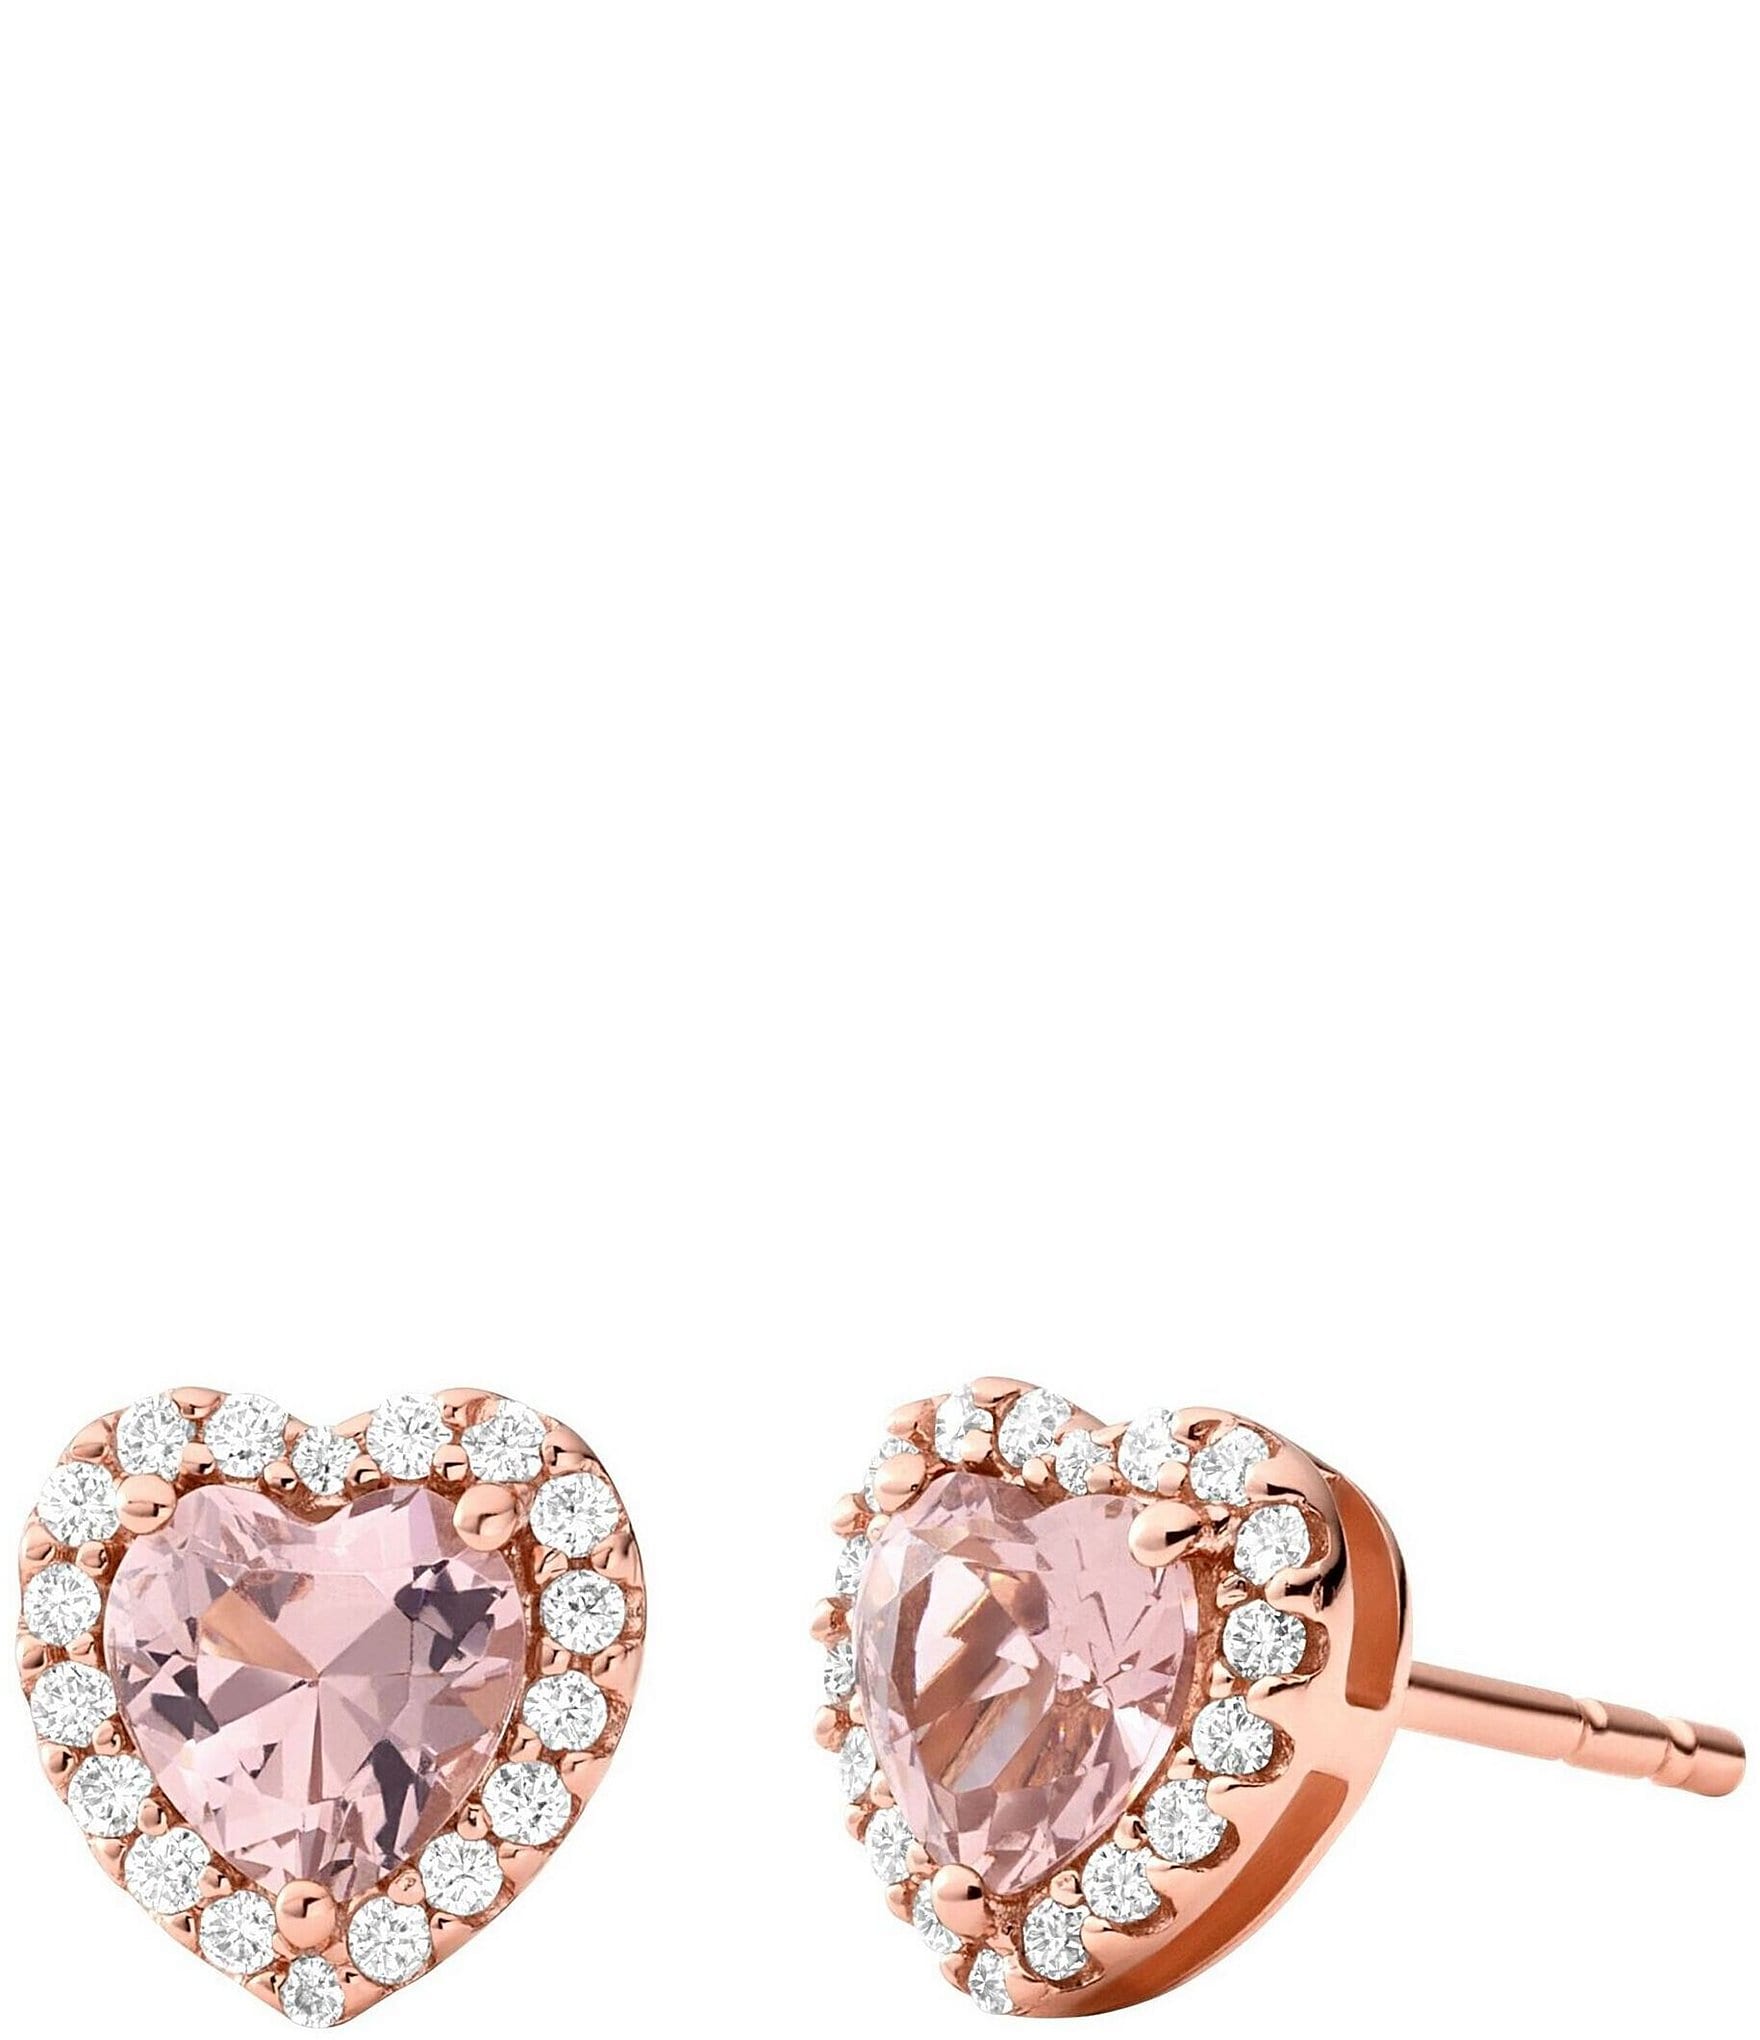 MICHAEL KORS Womens Rose Gold Blush Acetate Heart Earrings Studs MKJ6704791  +BOX | eBay